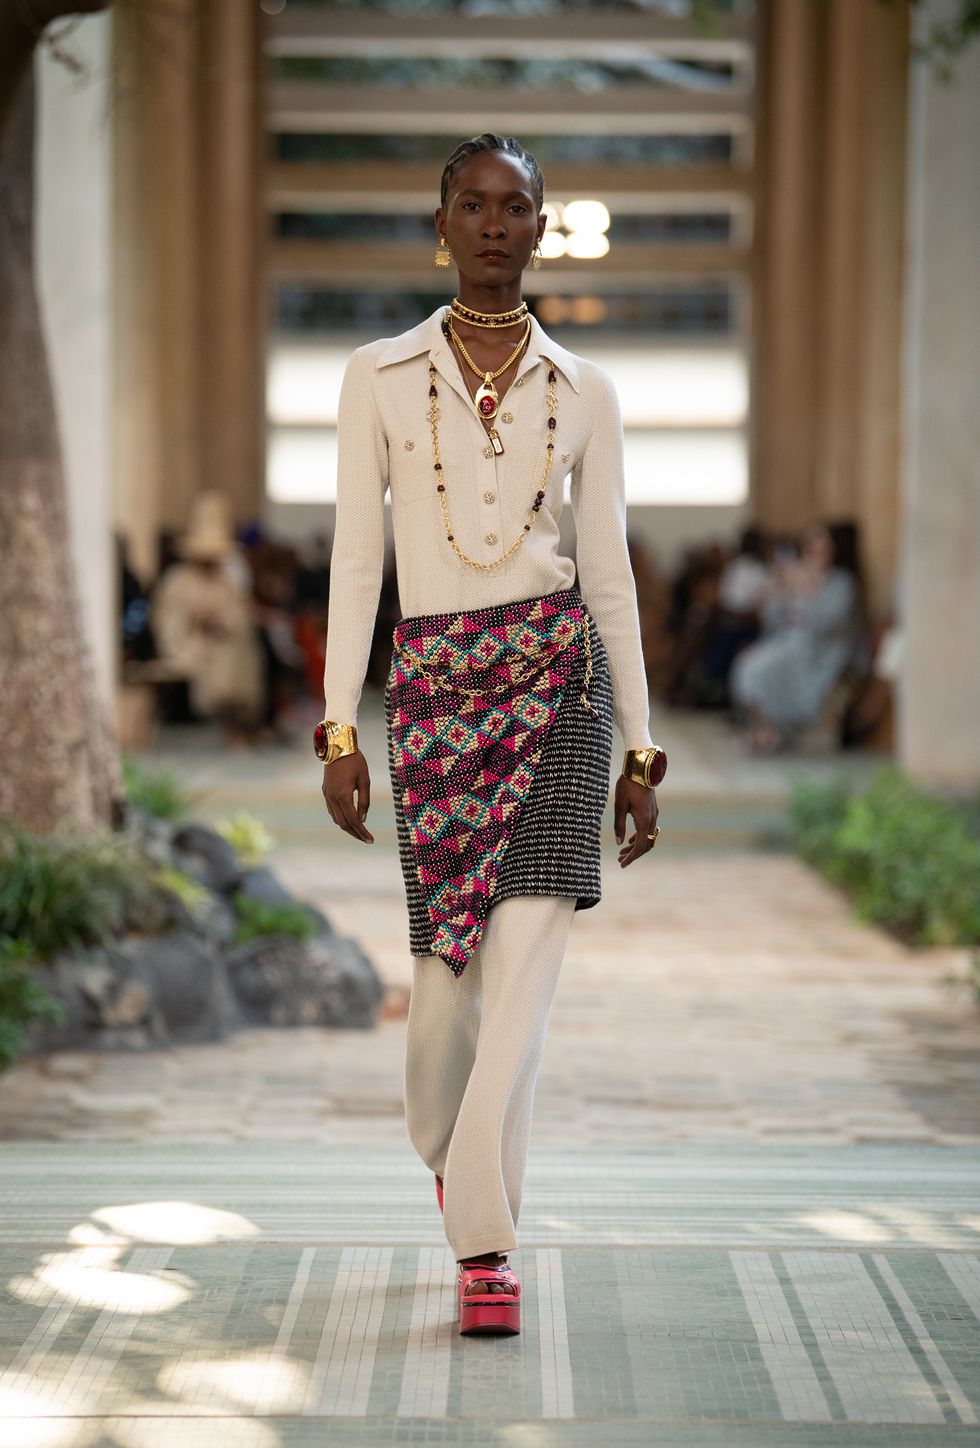 Этнические сюжеты и новая версия твидовых жакетов: каким был первый показ Chanel в Дакаре?